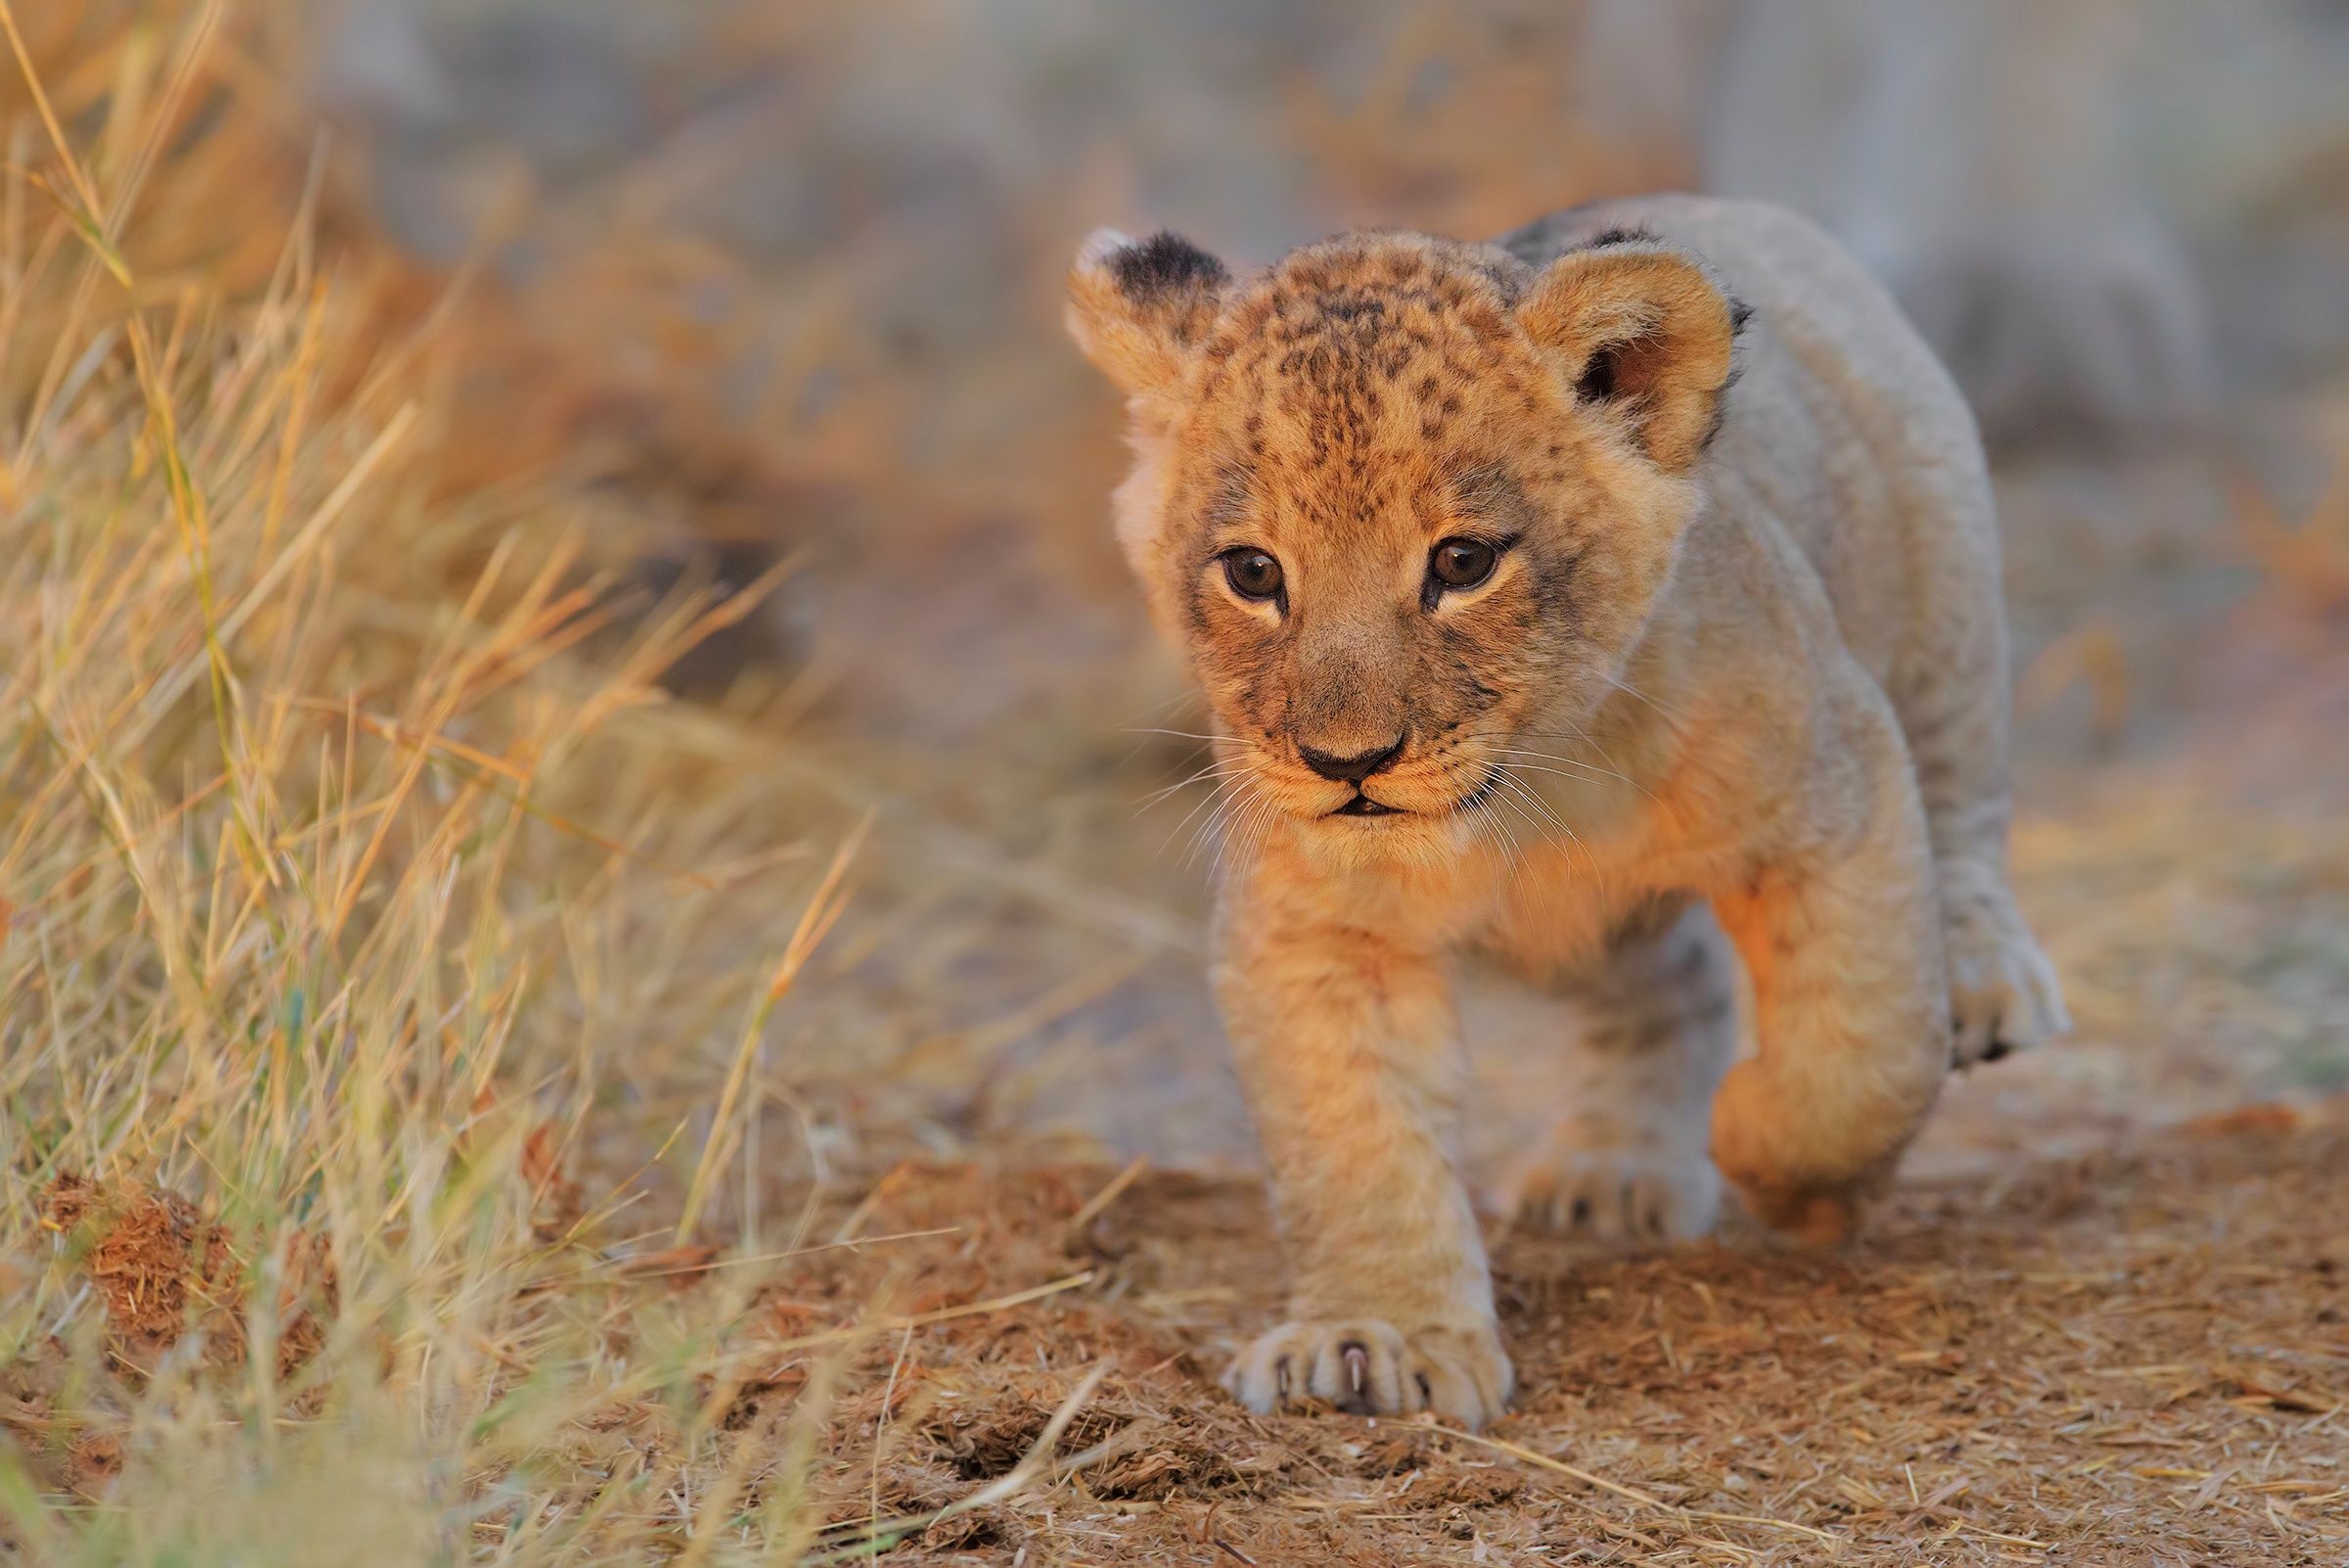 Cute lion cubs, Golden fur, Playful antics, Wild wonder, 2400x1610 HD Desktop